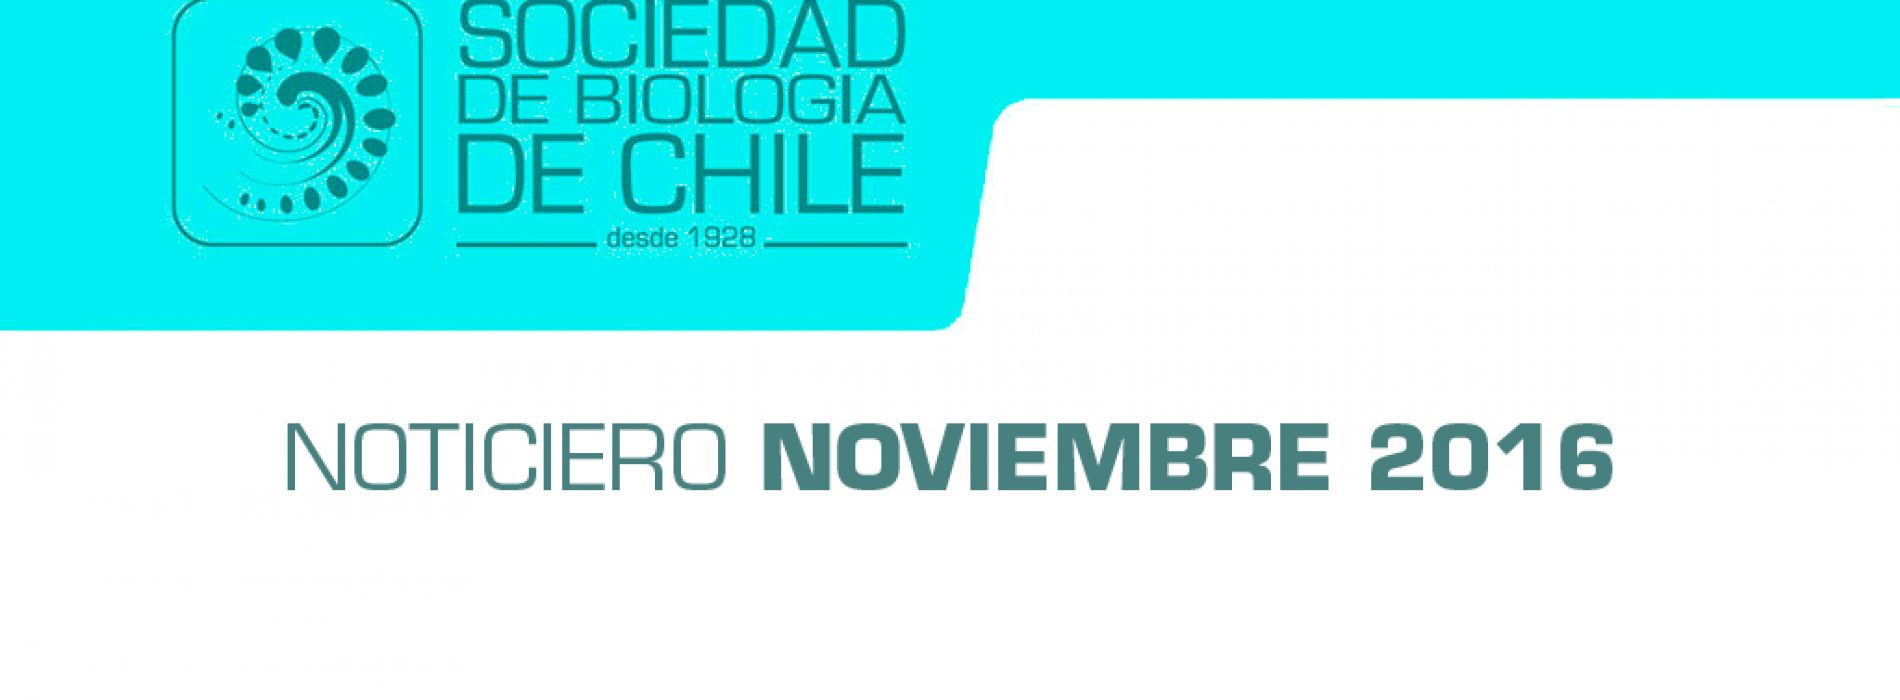 Noticiero Noviembre 2016. Sociedad de Biología de Chile